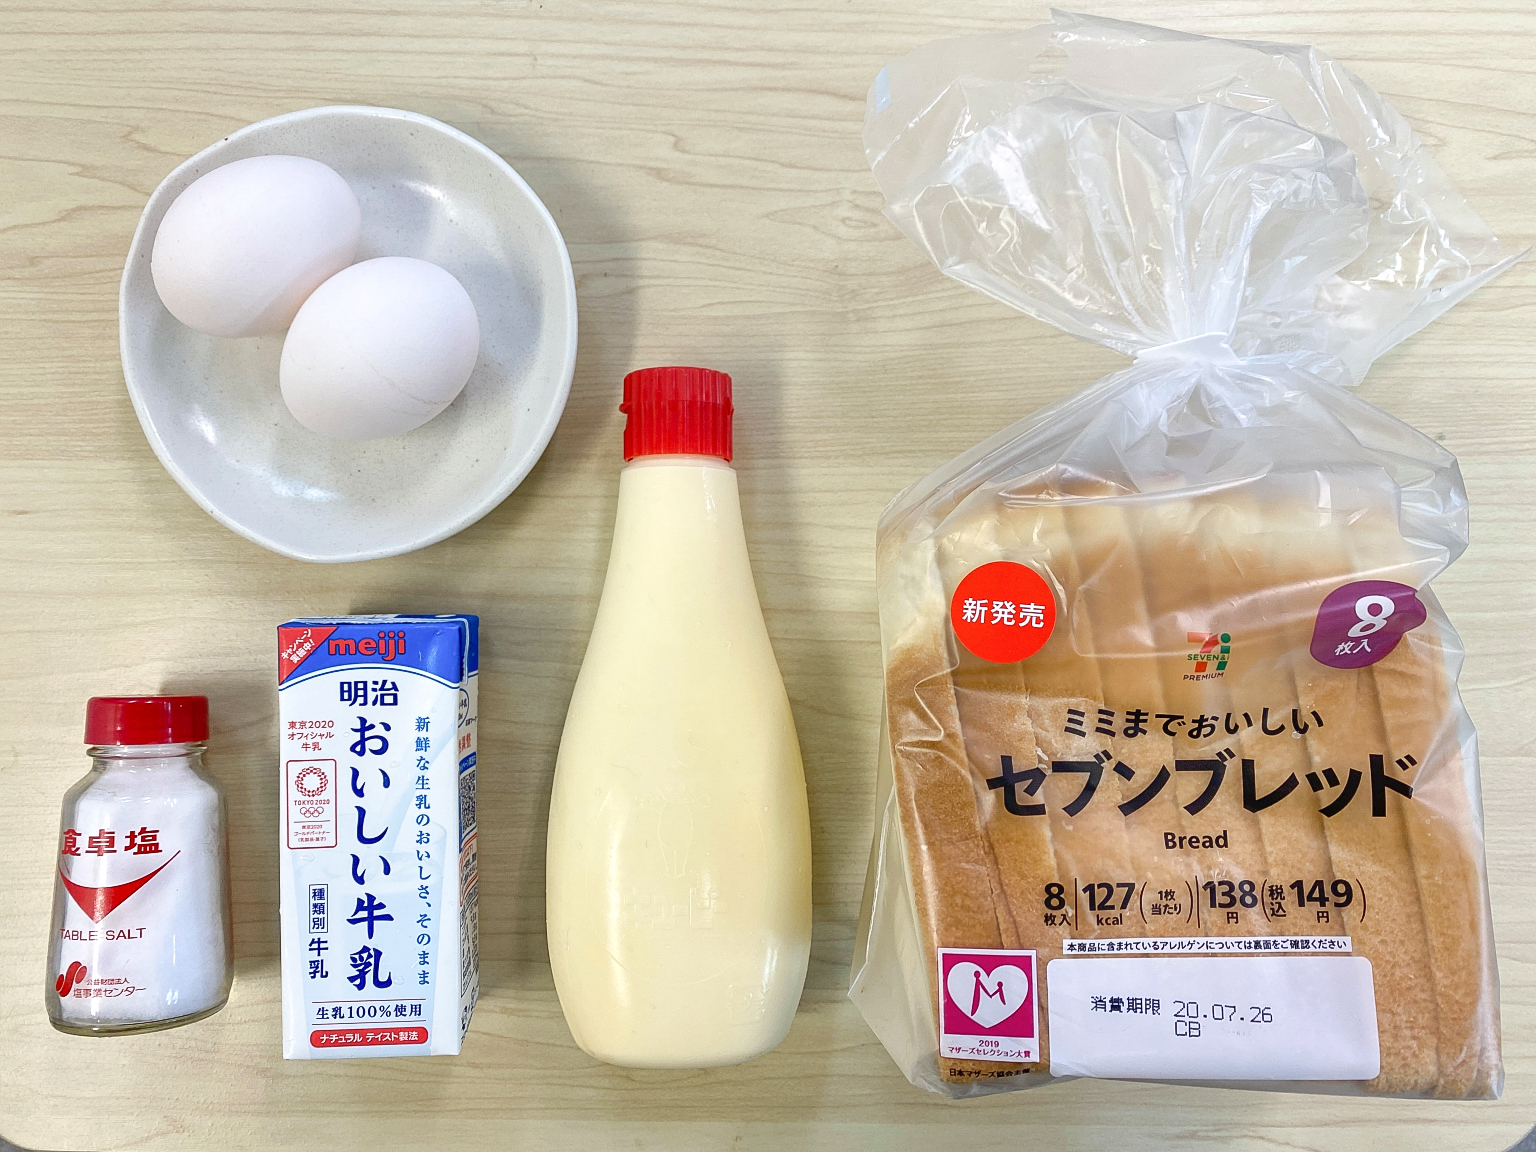 1*Omelette Maker Microwave Omelette Maker For Silicone Egg neus